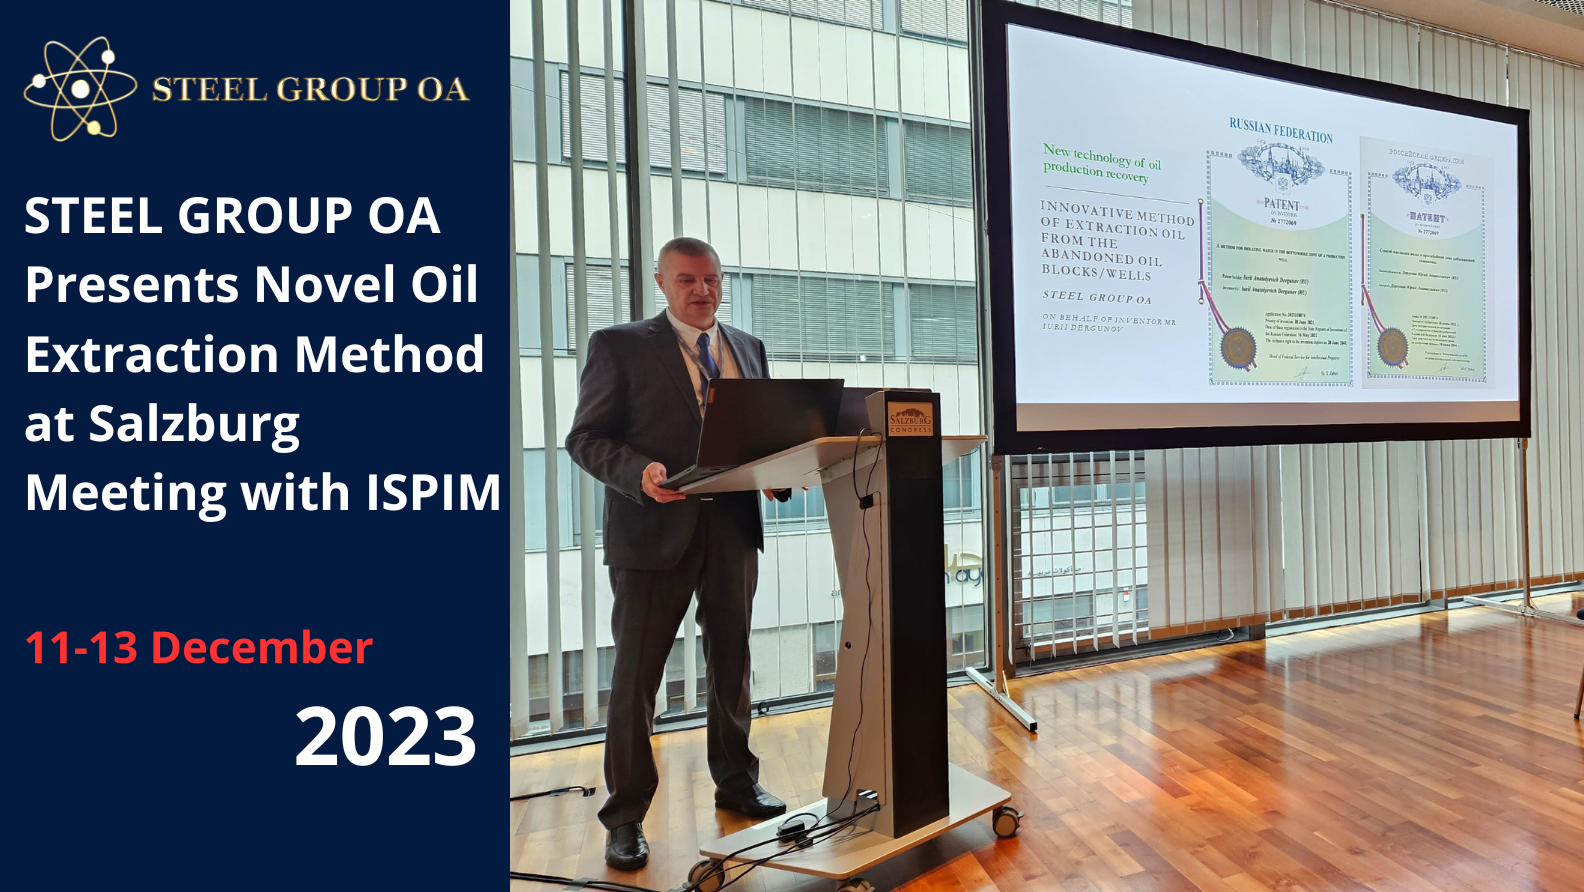 A STEEL GROUP OA Apresenta um Novo Método de Extração de Petróleo na Reunião de Salzburgo com a ISPIM